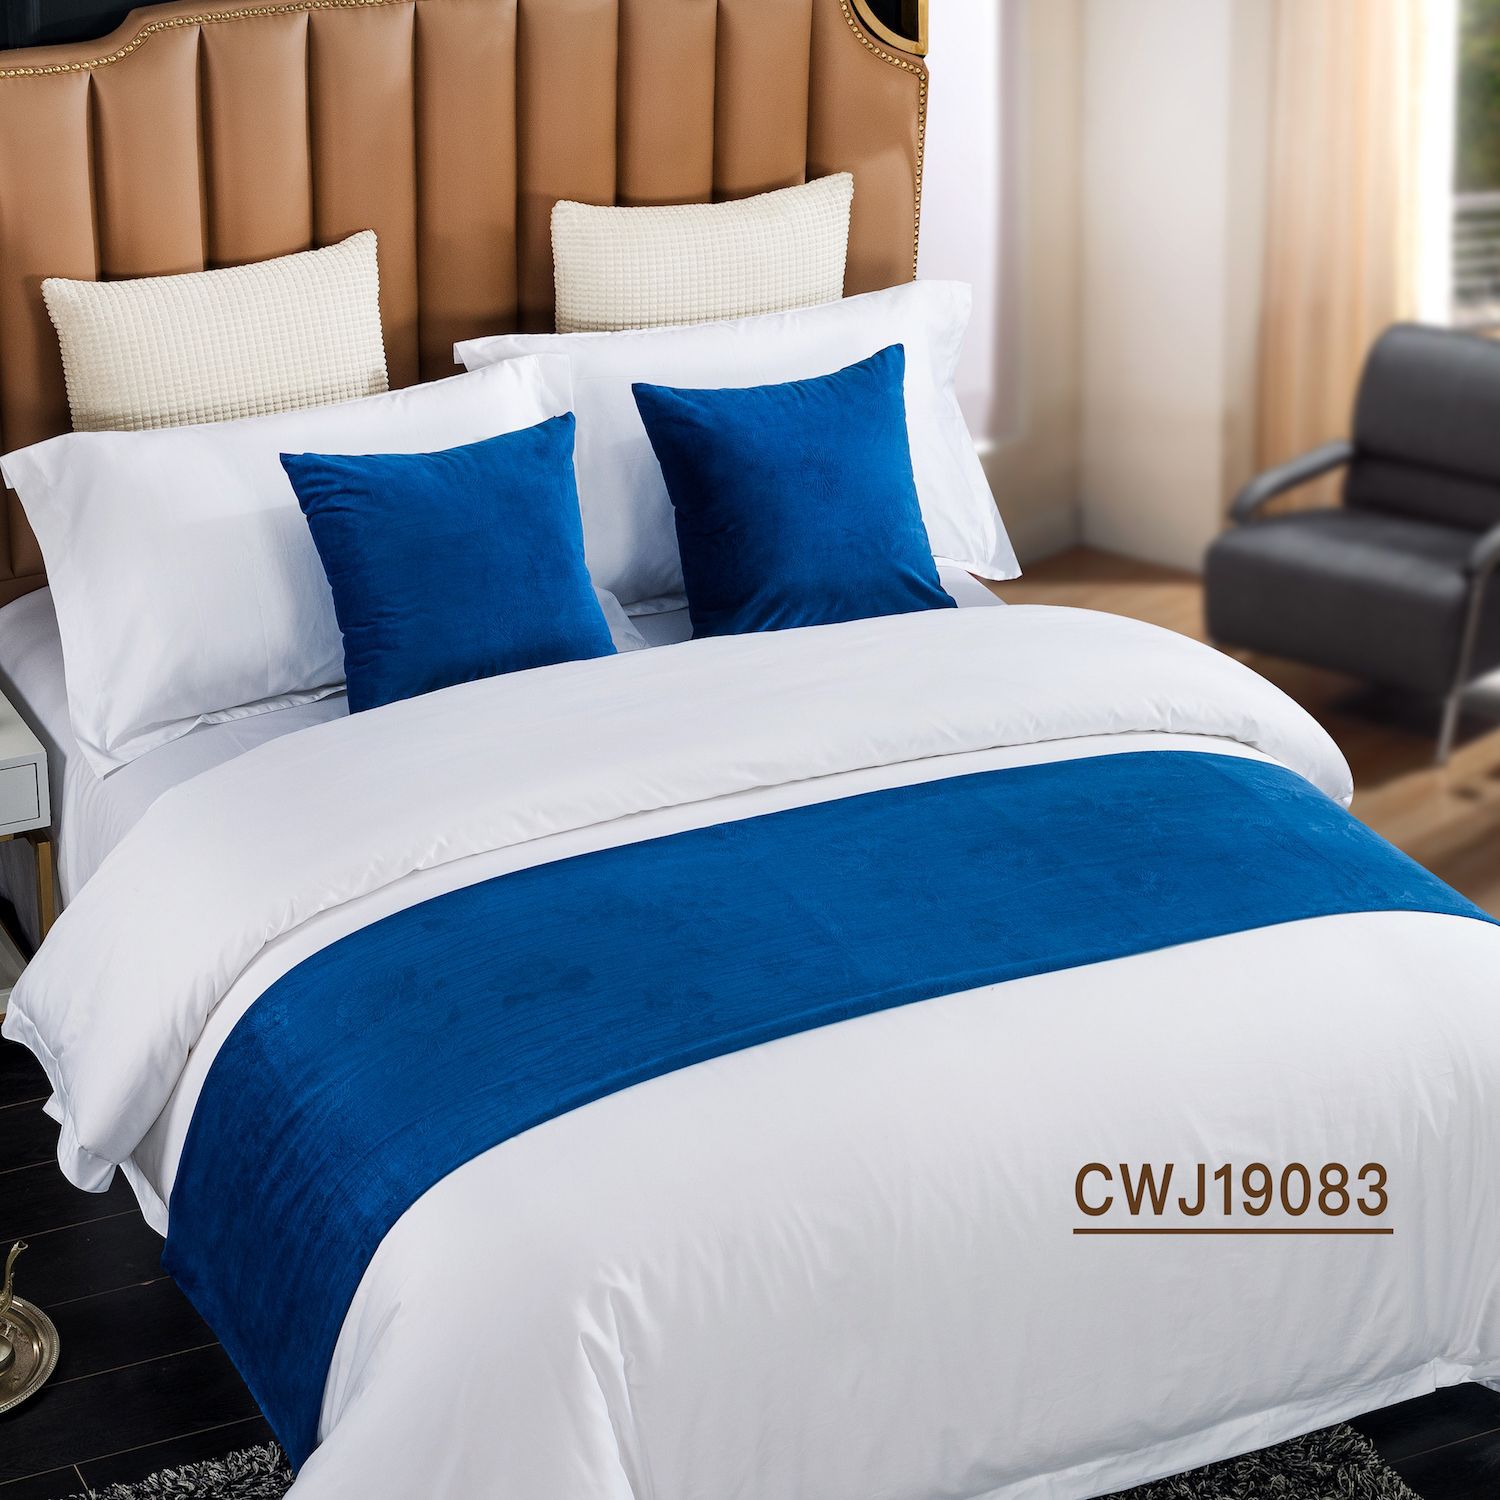 酒店民宿特色床旗 纯色拼接床尾巾 床尾垫抱枕 软装样板间床盖